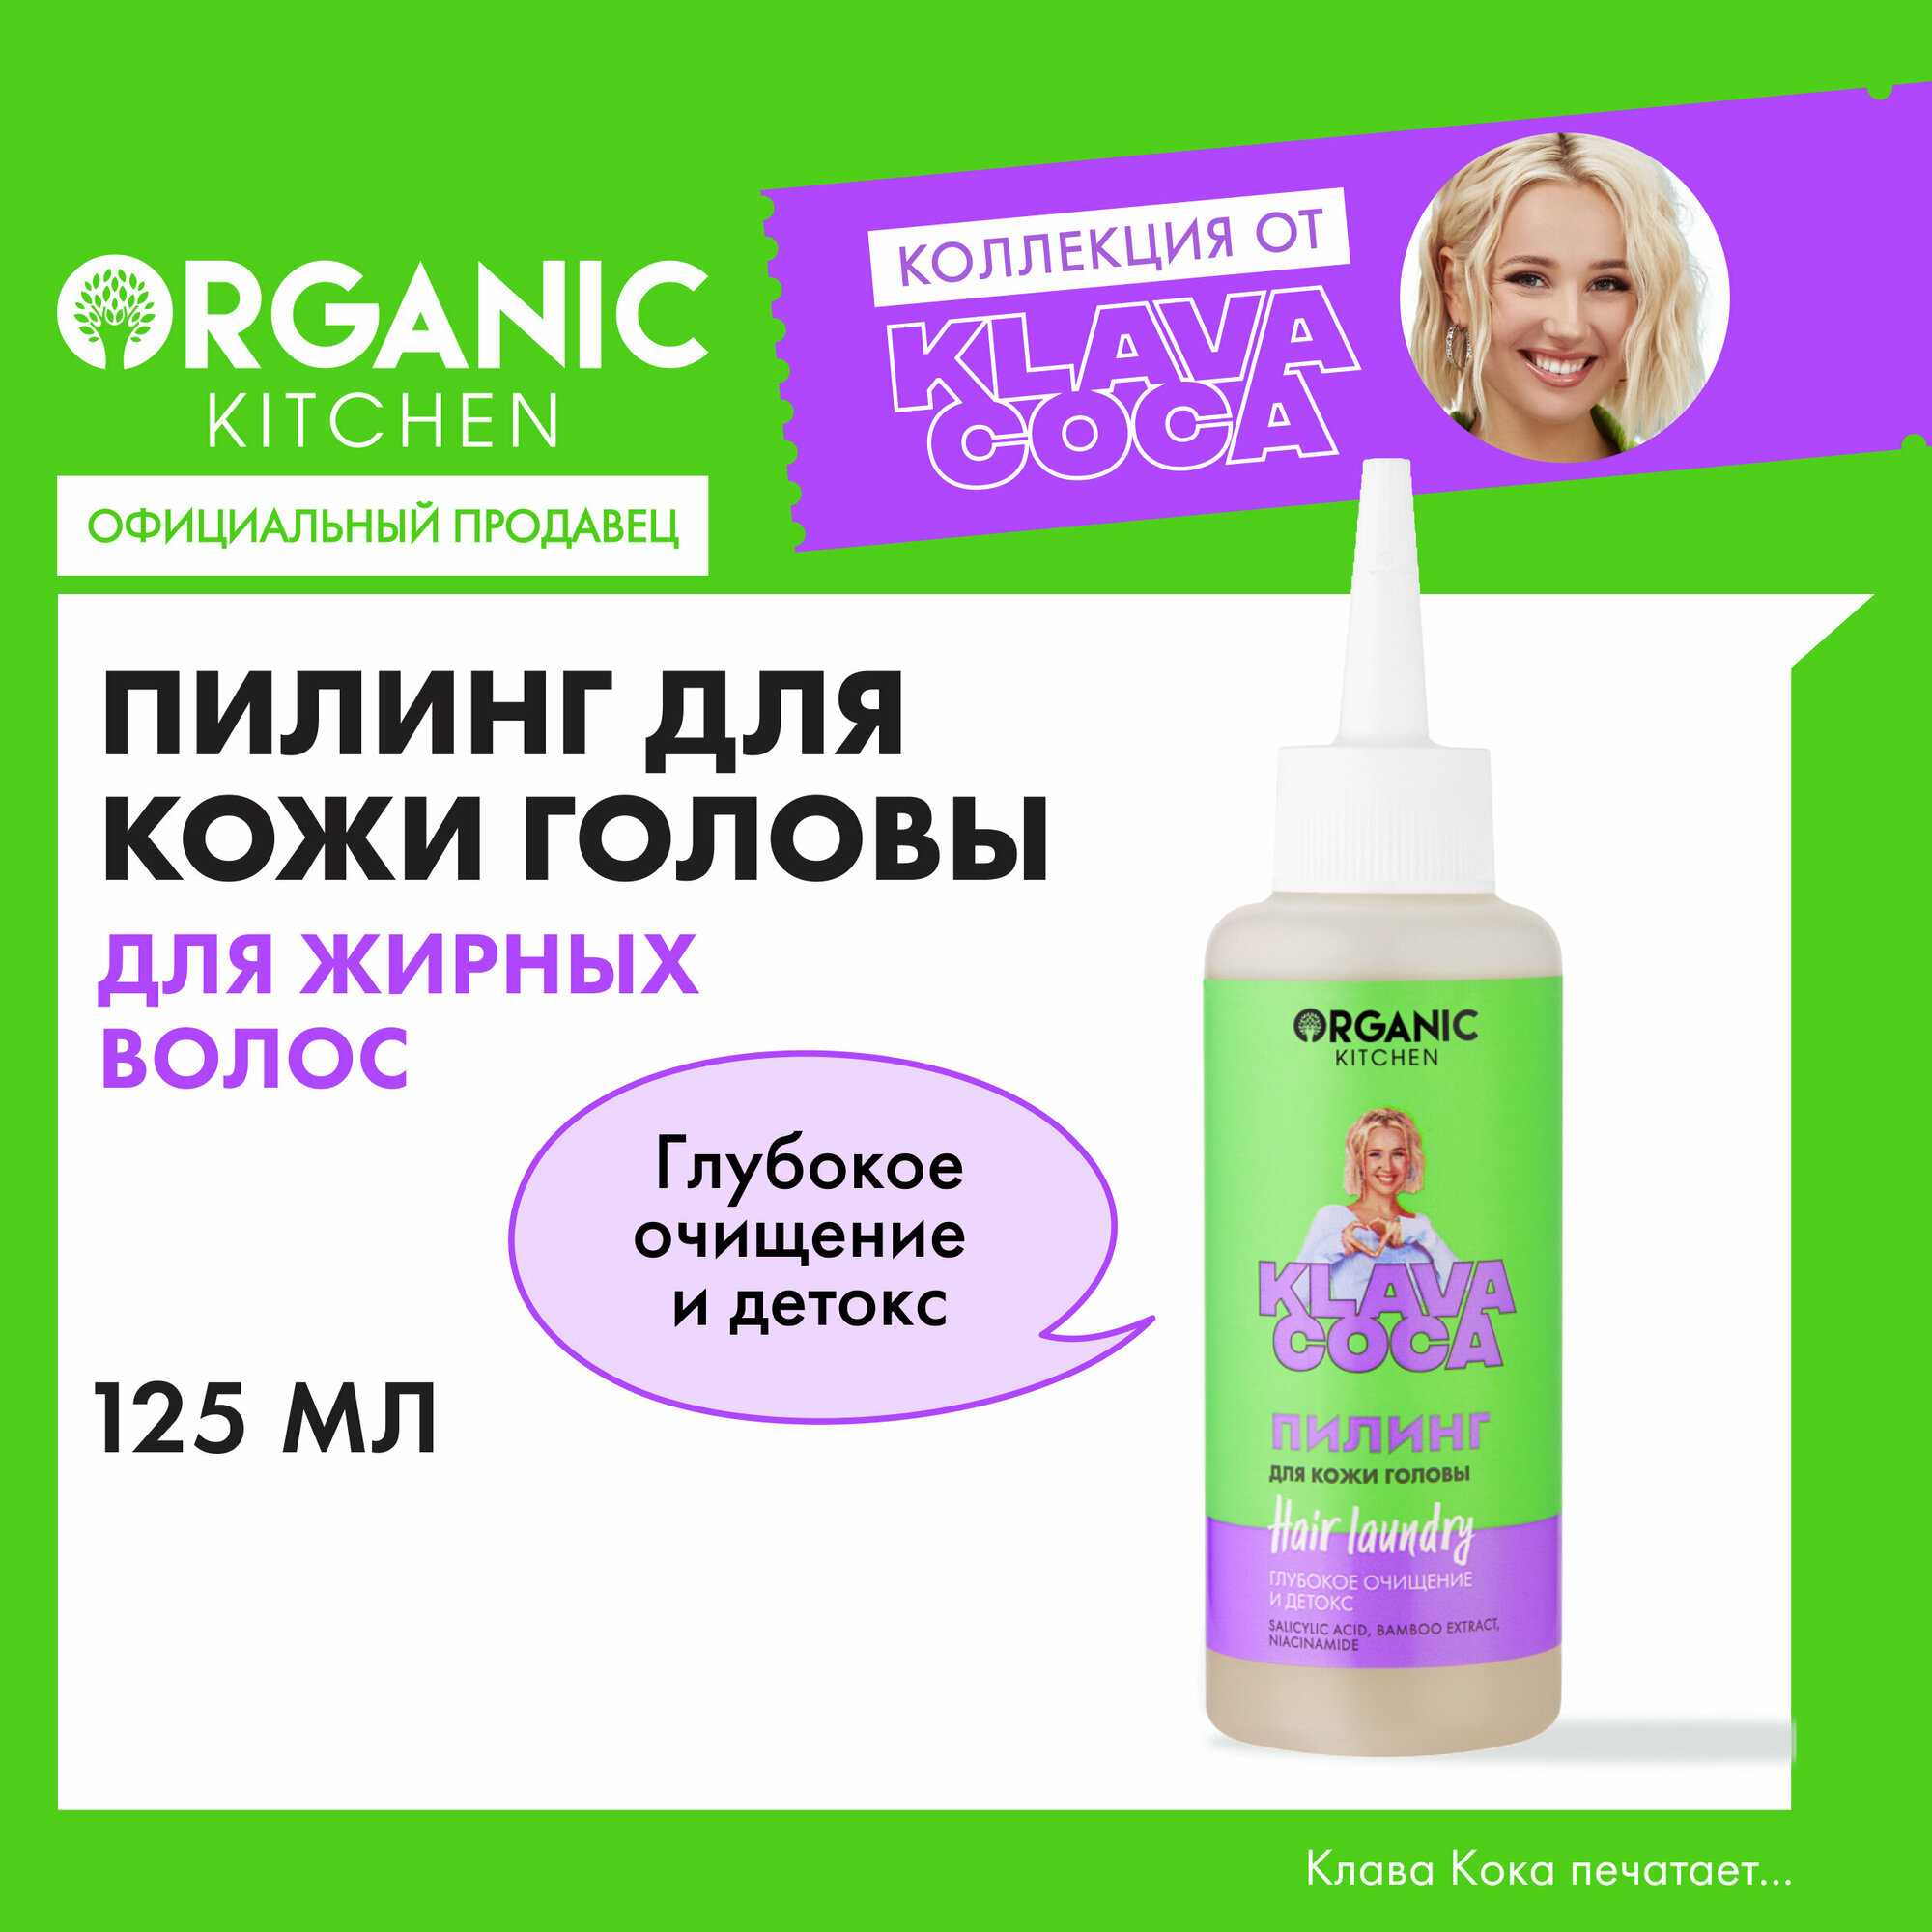 Пилинг для кожи головы Organic Kitchen Klava Coca "Hair Laundry. Глубокое очищение и детокс", 125 мл